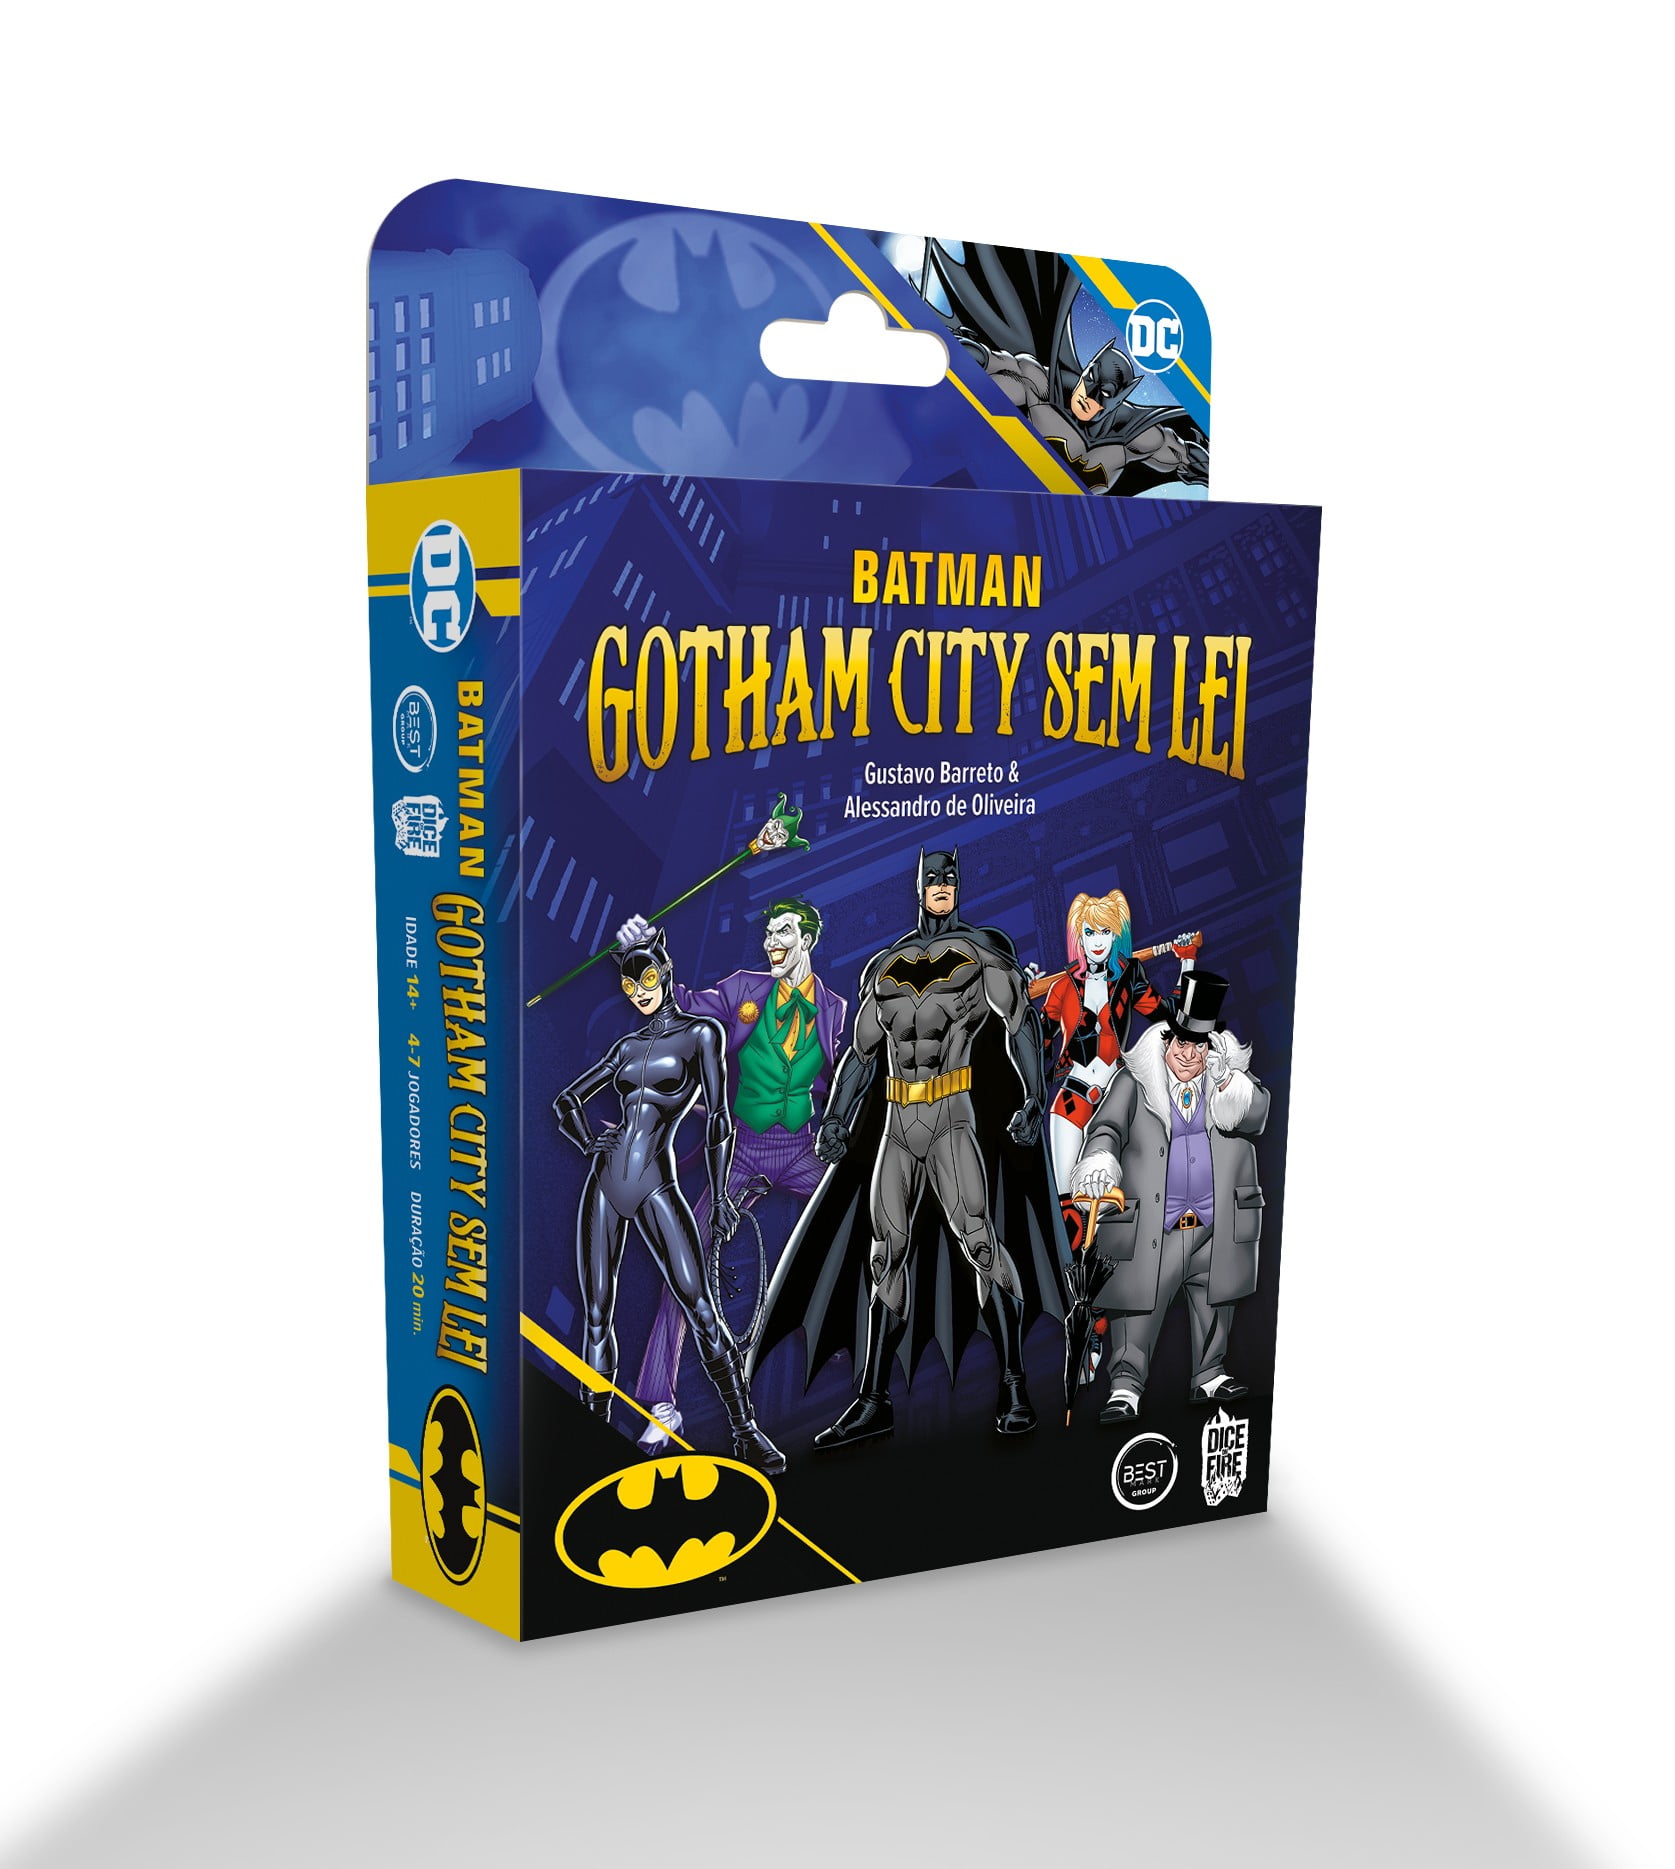 Batman Gotham City sem lei + Grátis: Moeda de Metal - Bravo Jogos